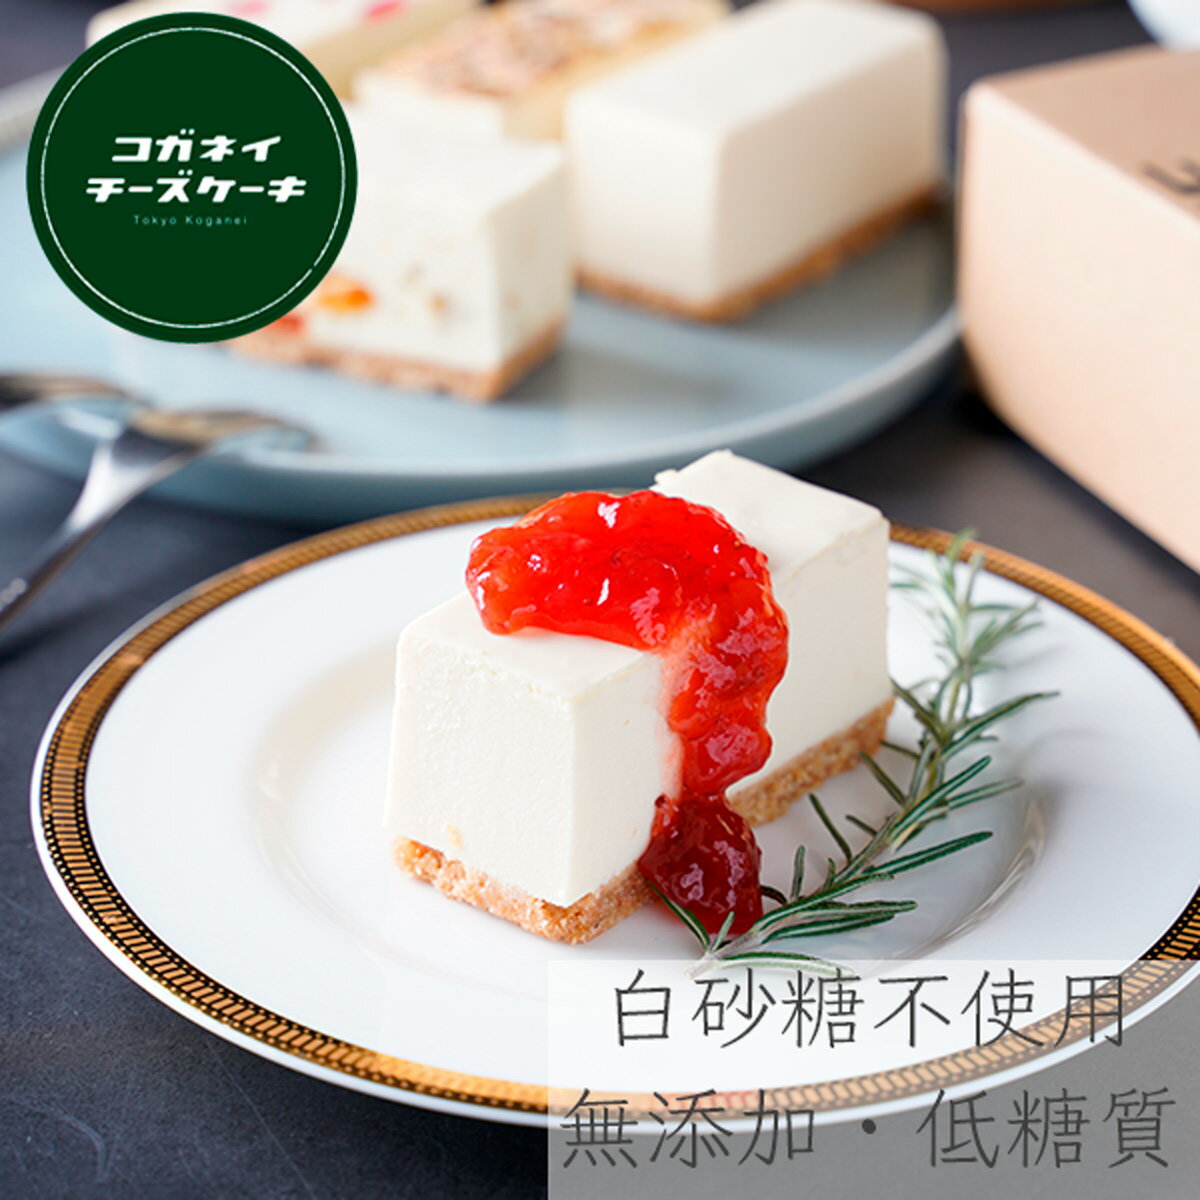 999円 最大84 オフ お中元 御中元 夏ギフト 白砂糖不使用 チーズケーキ